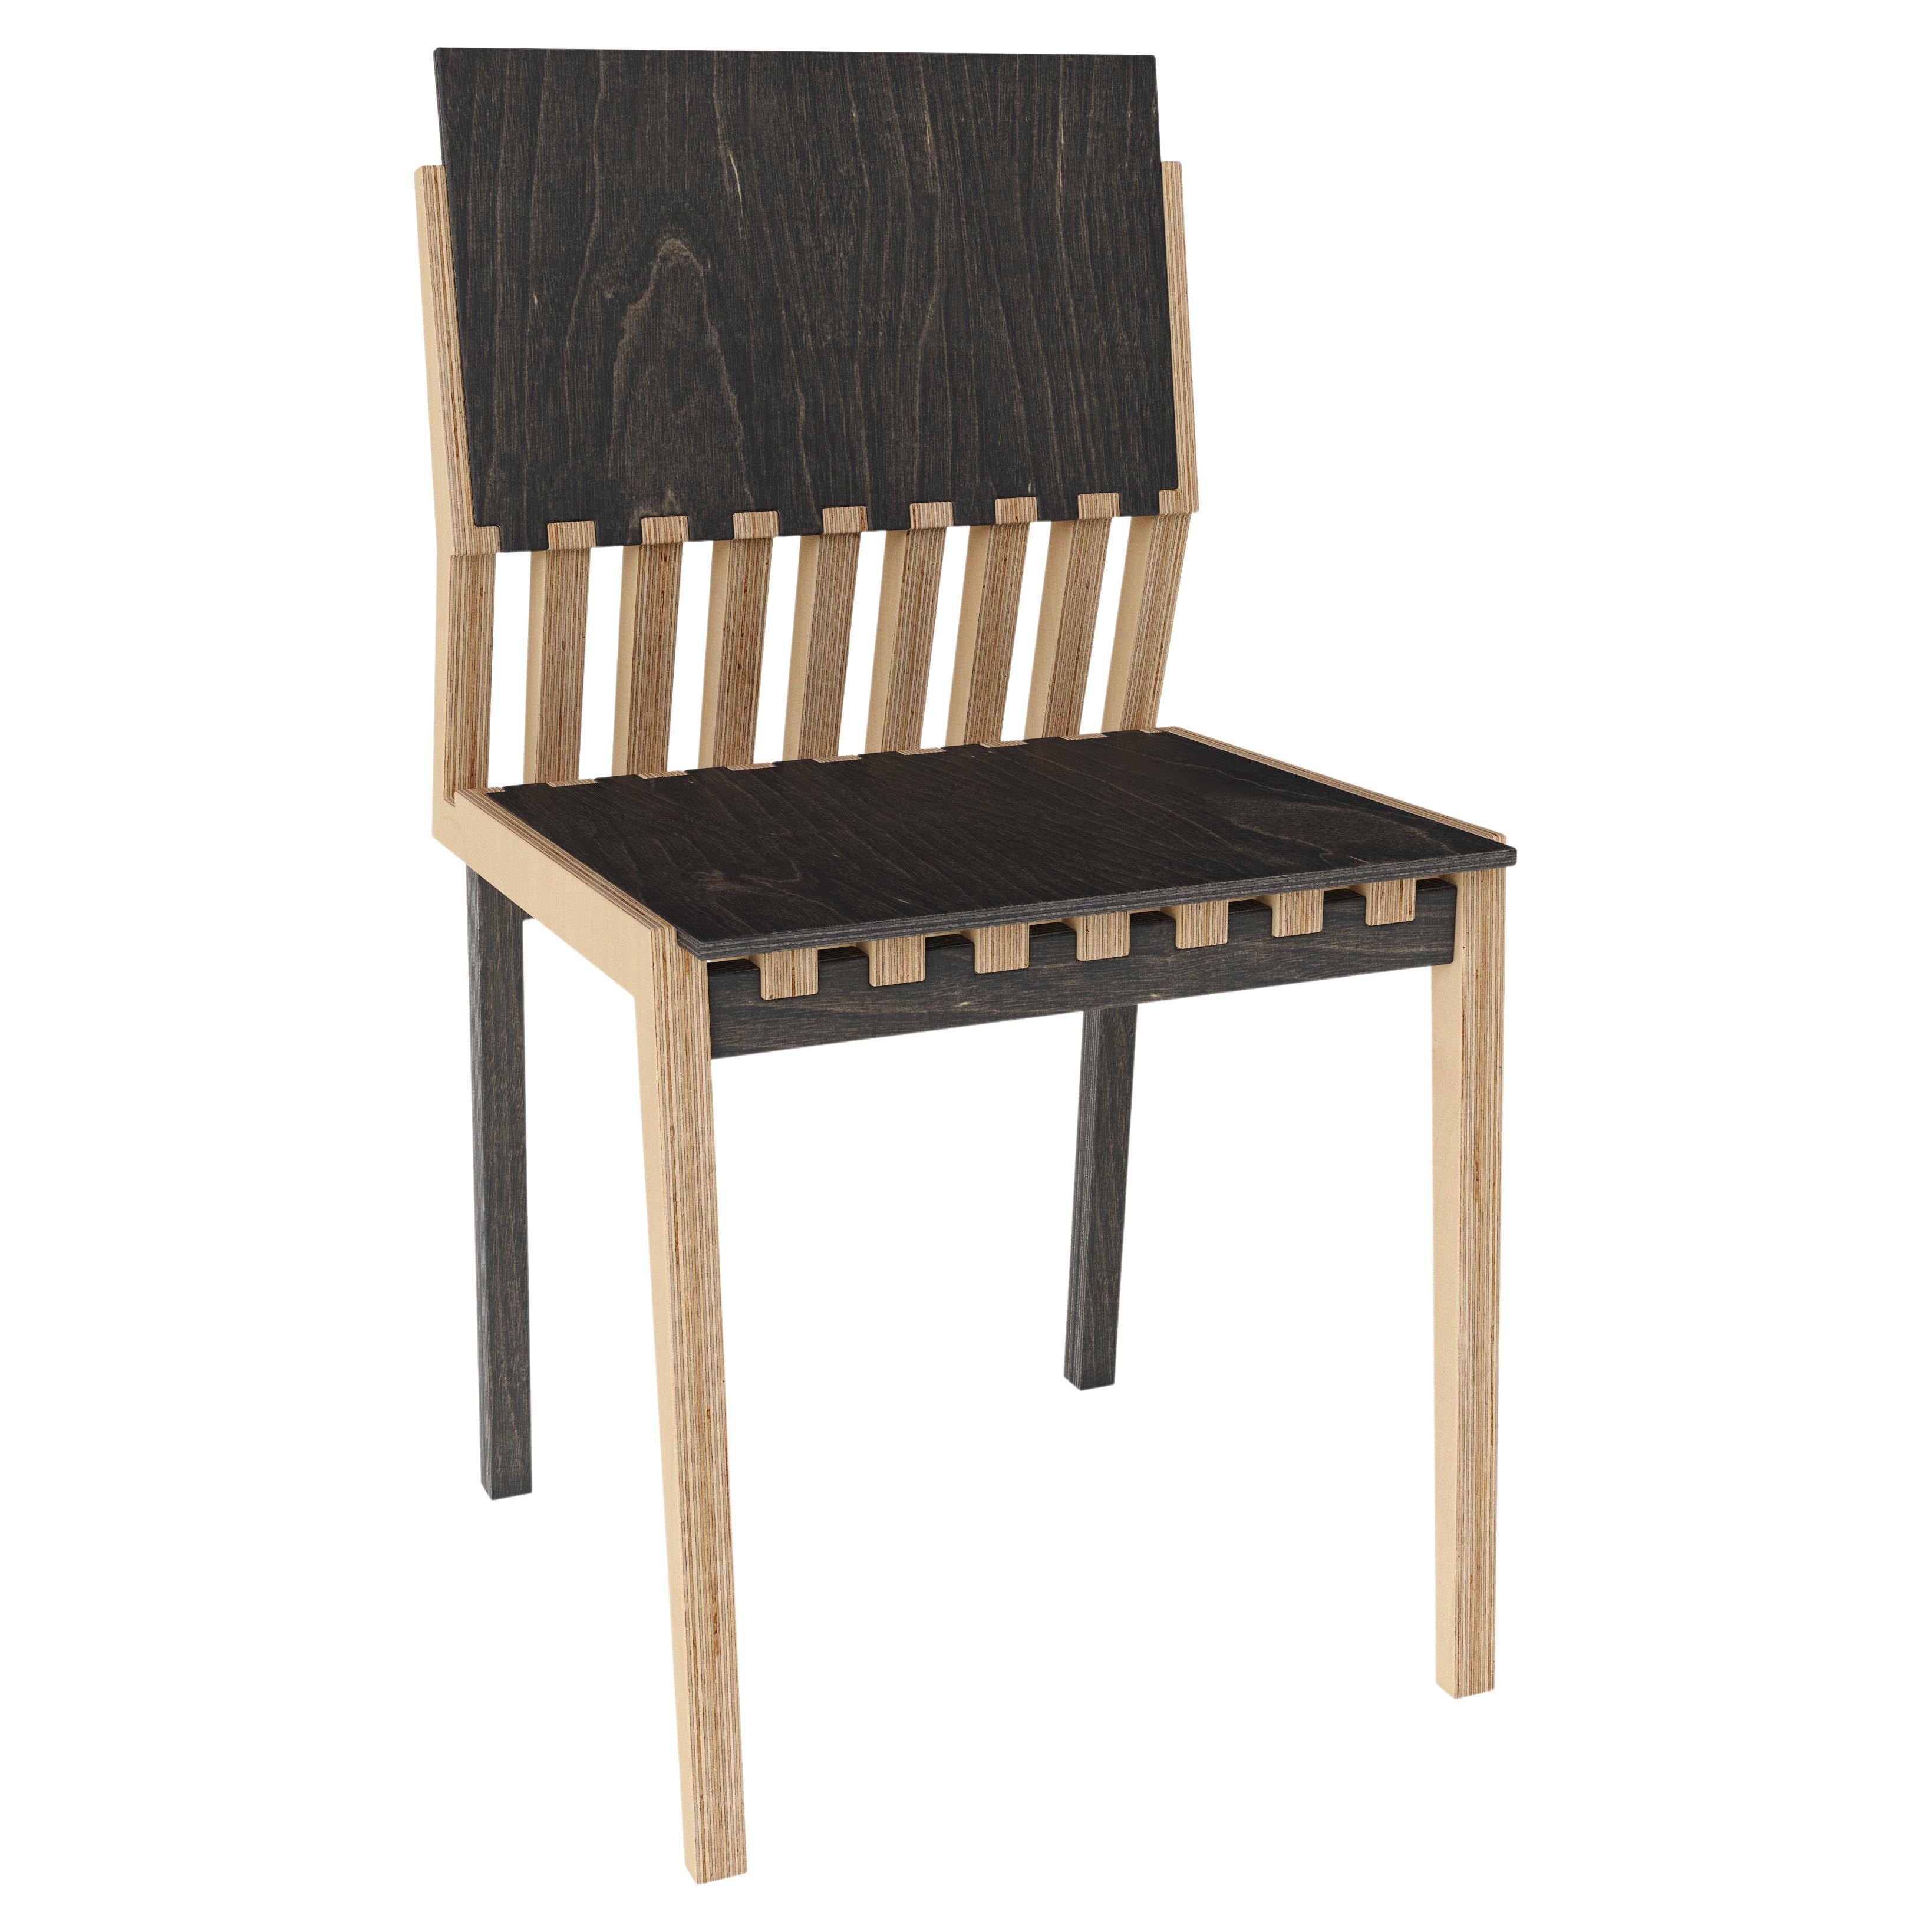 Dynamische Linien und kontrastreiche Farben stellen wilde Küstenklippen dar. Zugleich  Dieser Stuhl zeichnet sich durch minimalistische architektonische Linien und Funktionalität aus, die beide vom nordischen Design geprägt sind. Diese